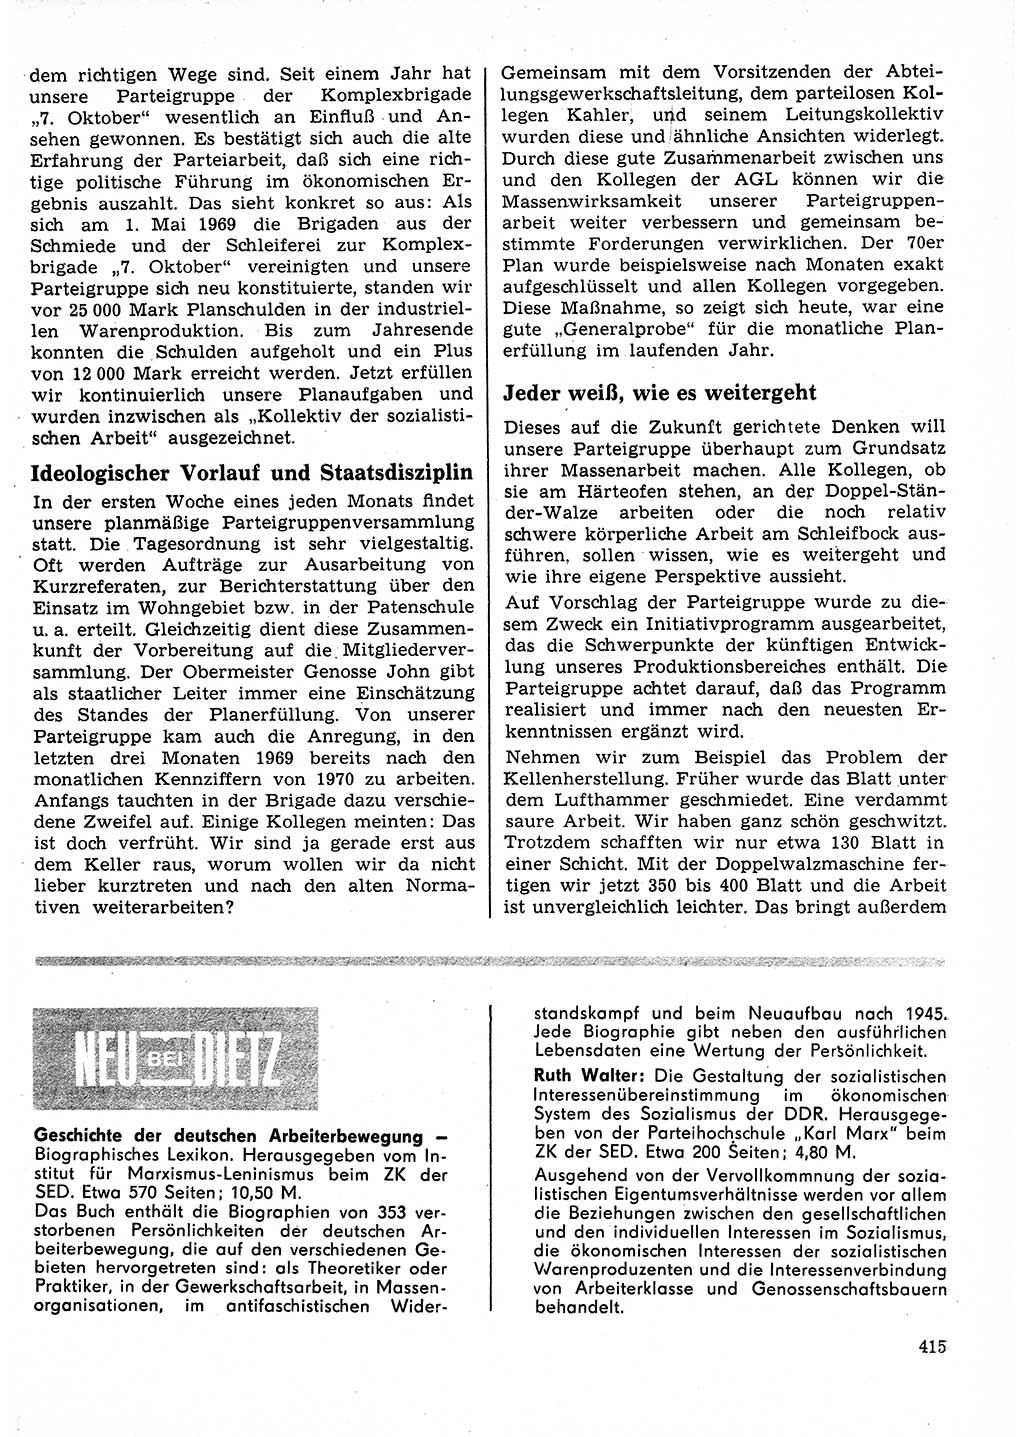 Neuer Weg (NW), Organ des Zentralkomitees (ZK) der SED (Sozialistische Einheitspartei Deutschlands) für Fragen des Parteilebens, 25. Jahrgang [Deutsche Demokratische Republik (DDR)] 1970, Seite 415 (NW ZK SED DDR 1970, S. 415)